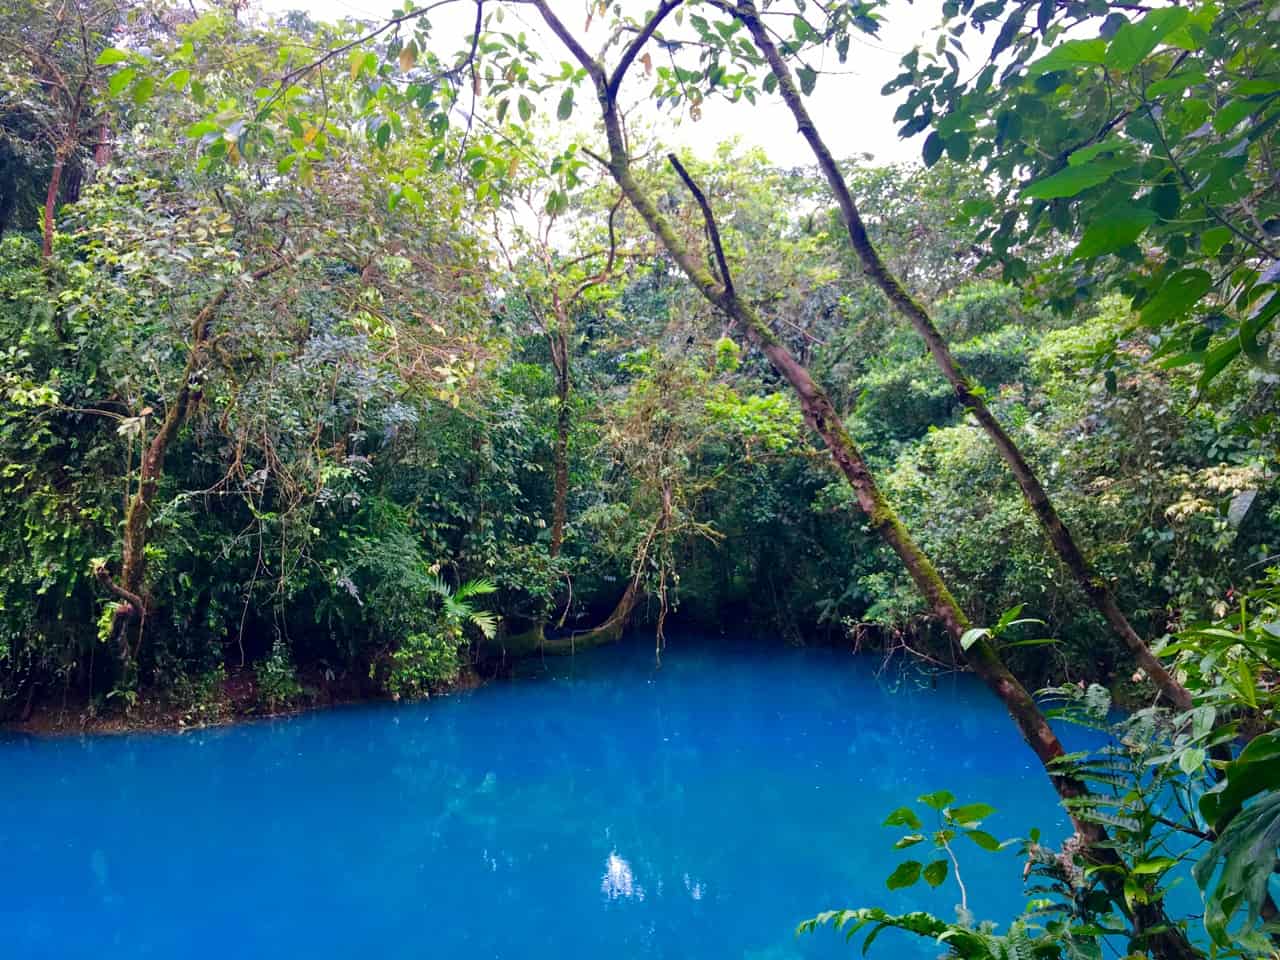  Pozo Azul w Parku Narodowym Tenorio jest żywy błękit nieba ze względu na minerały. 